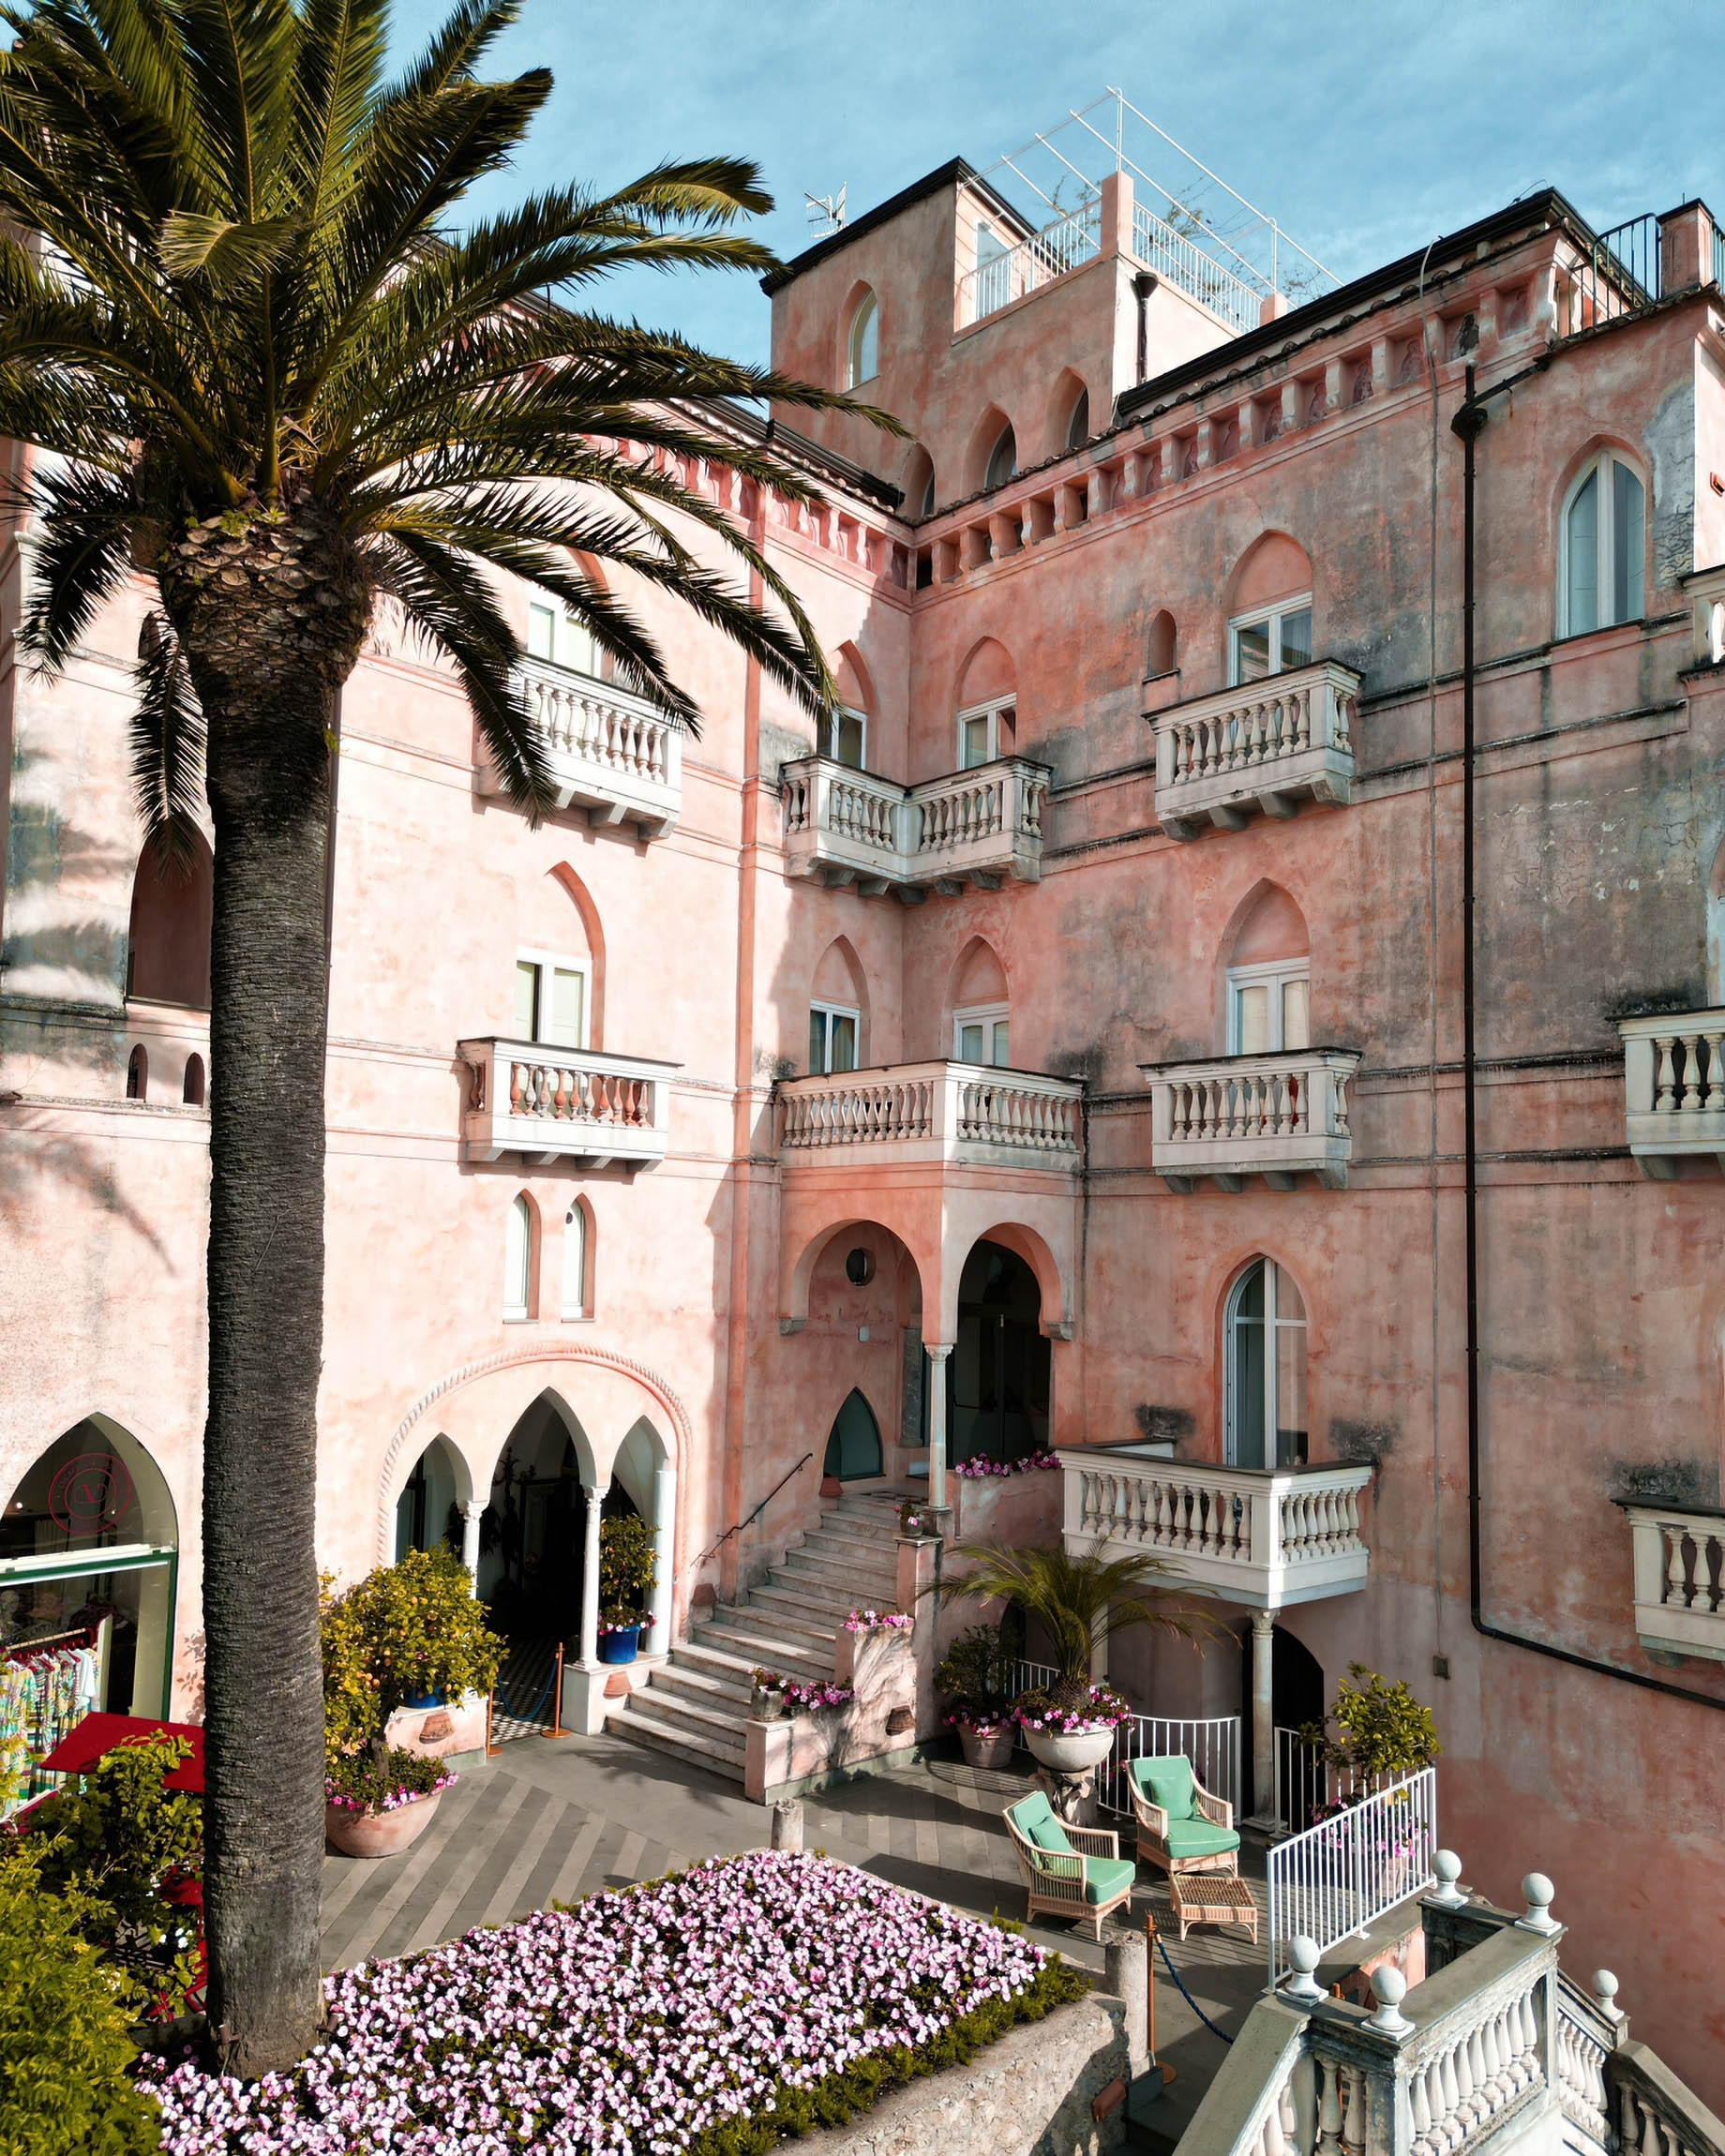 Palazzo Avino Hotel – Amalfi Coast, Ravello, Italy – Entrance